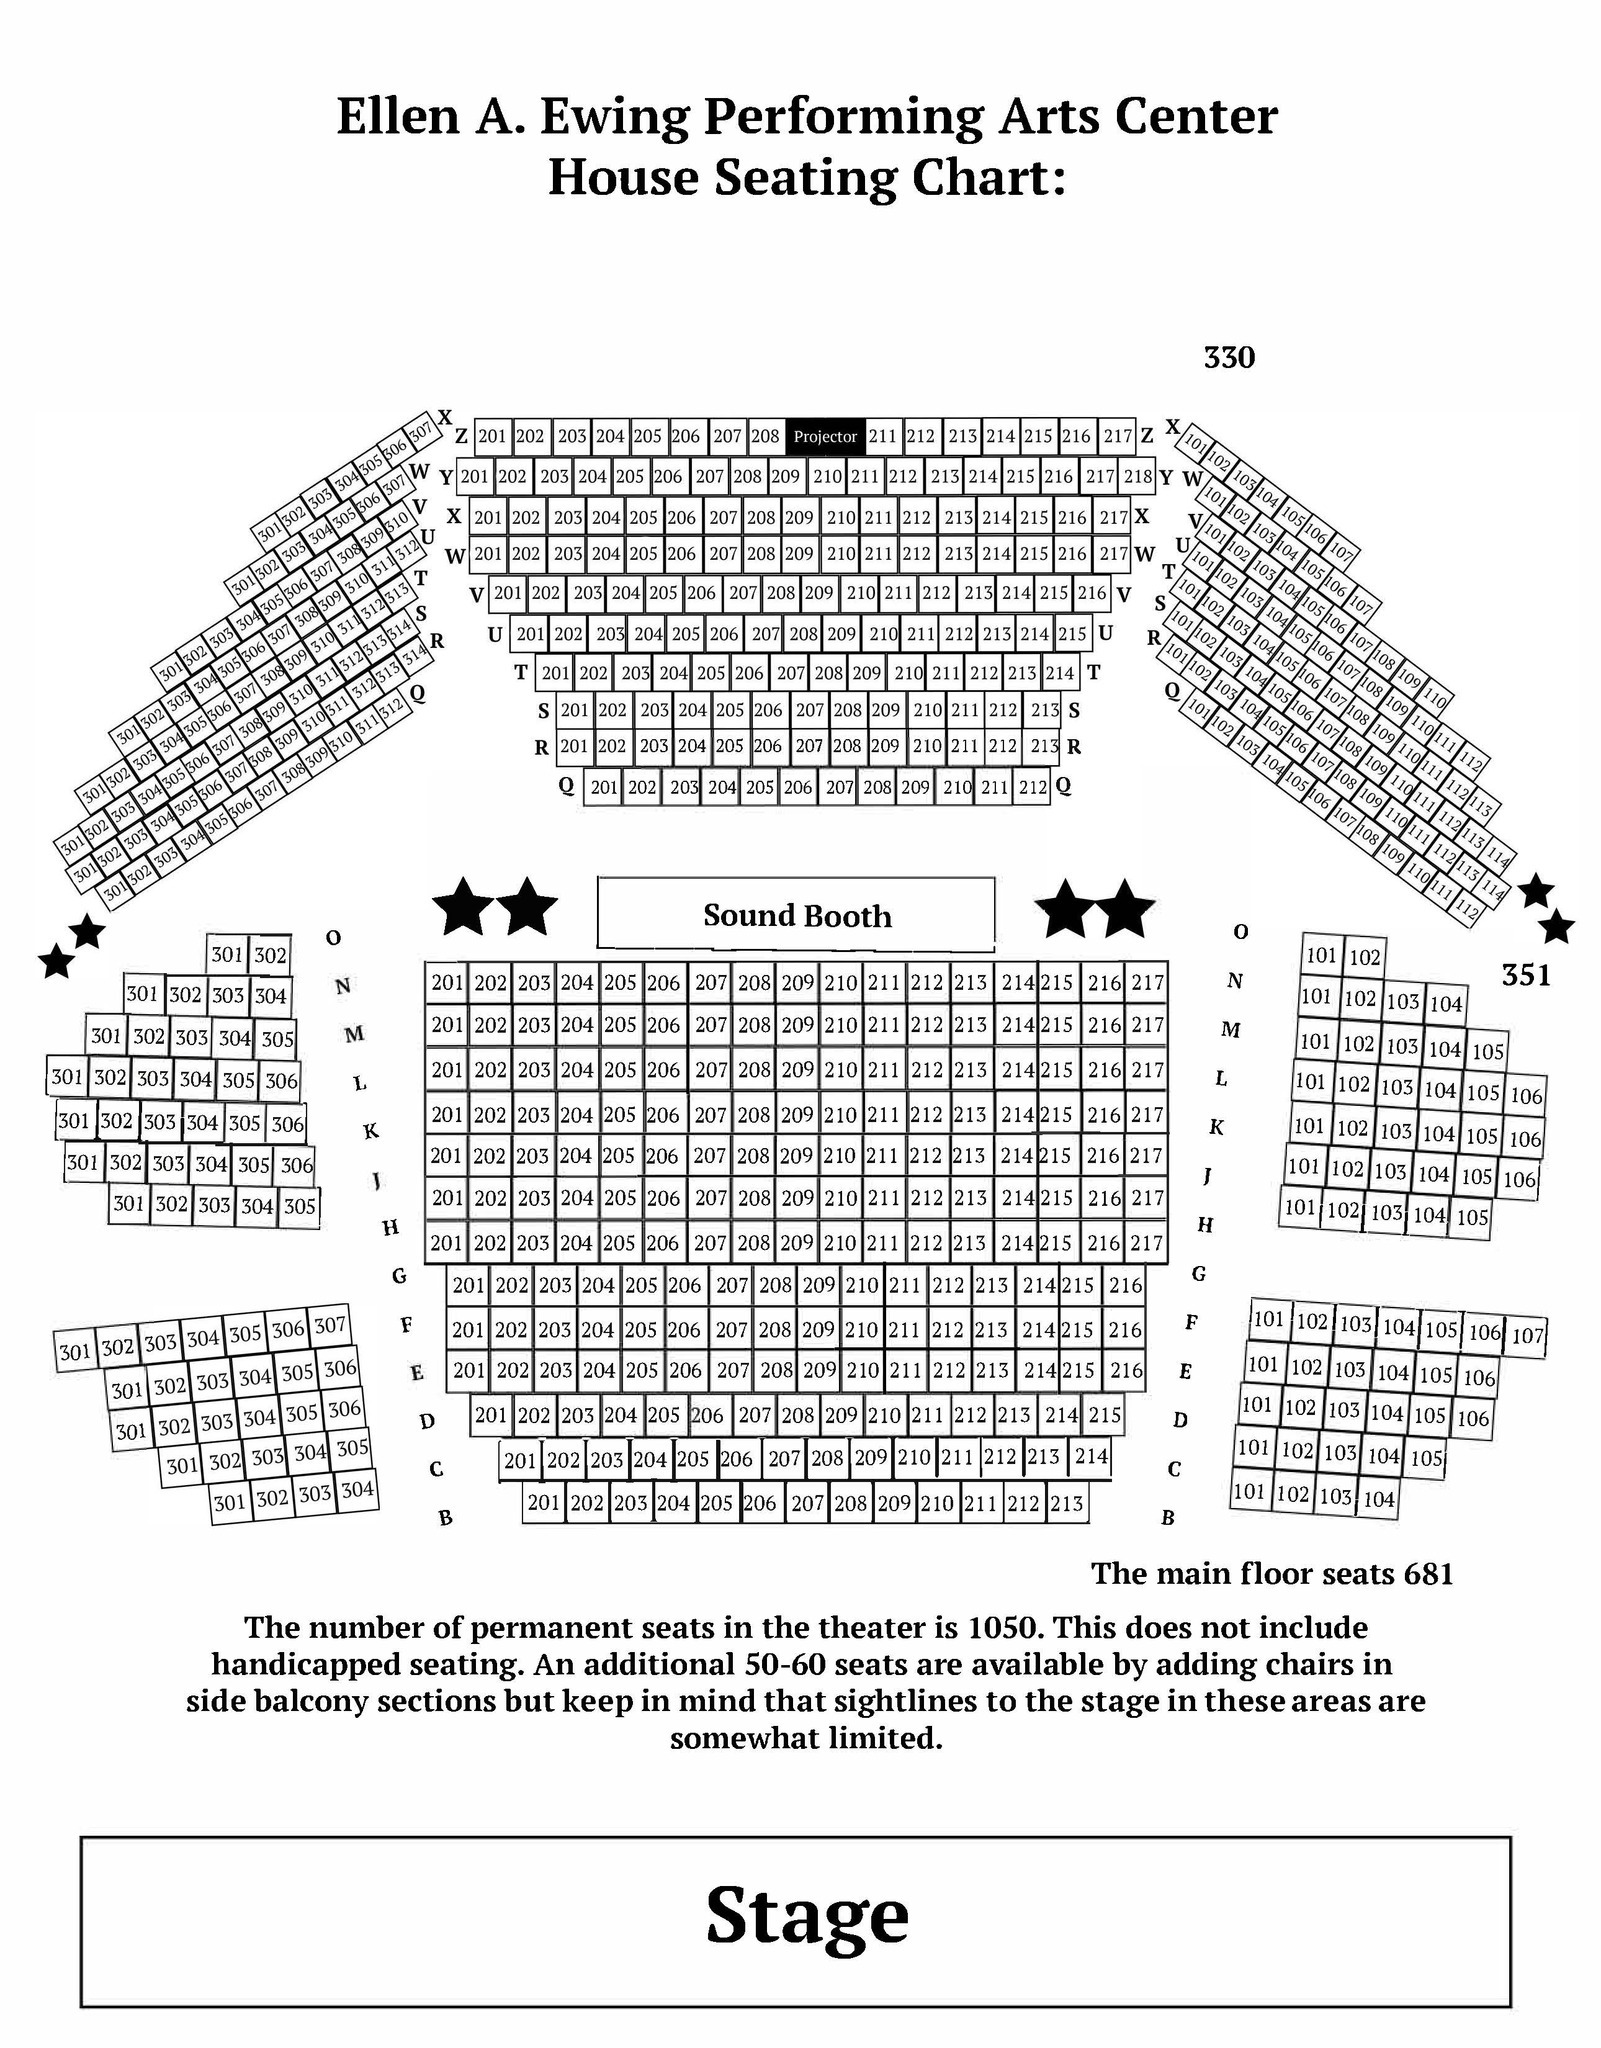 HS Auditorium Main Floor Seating Chart